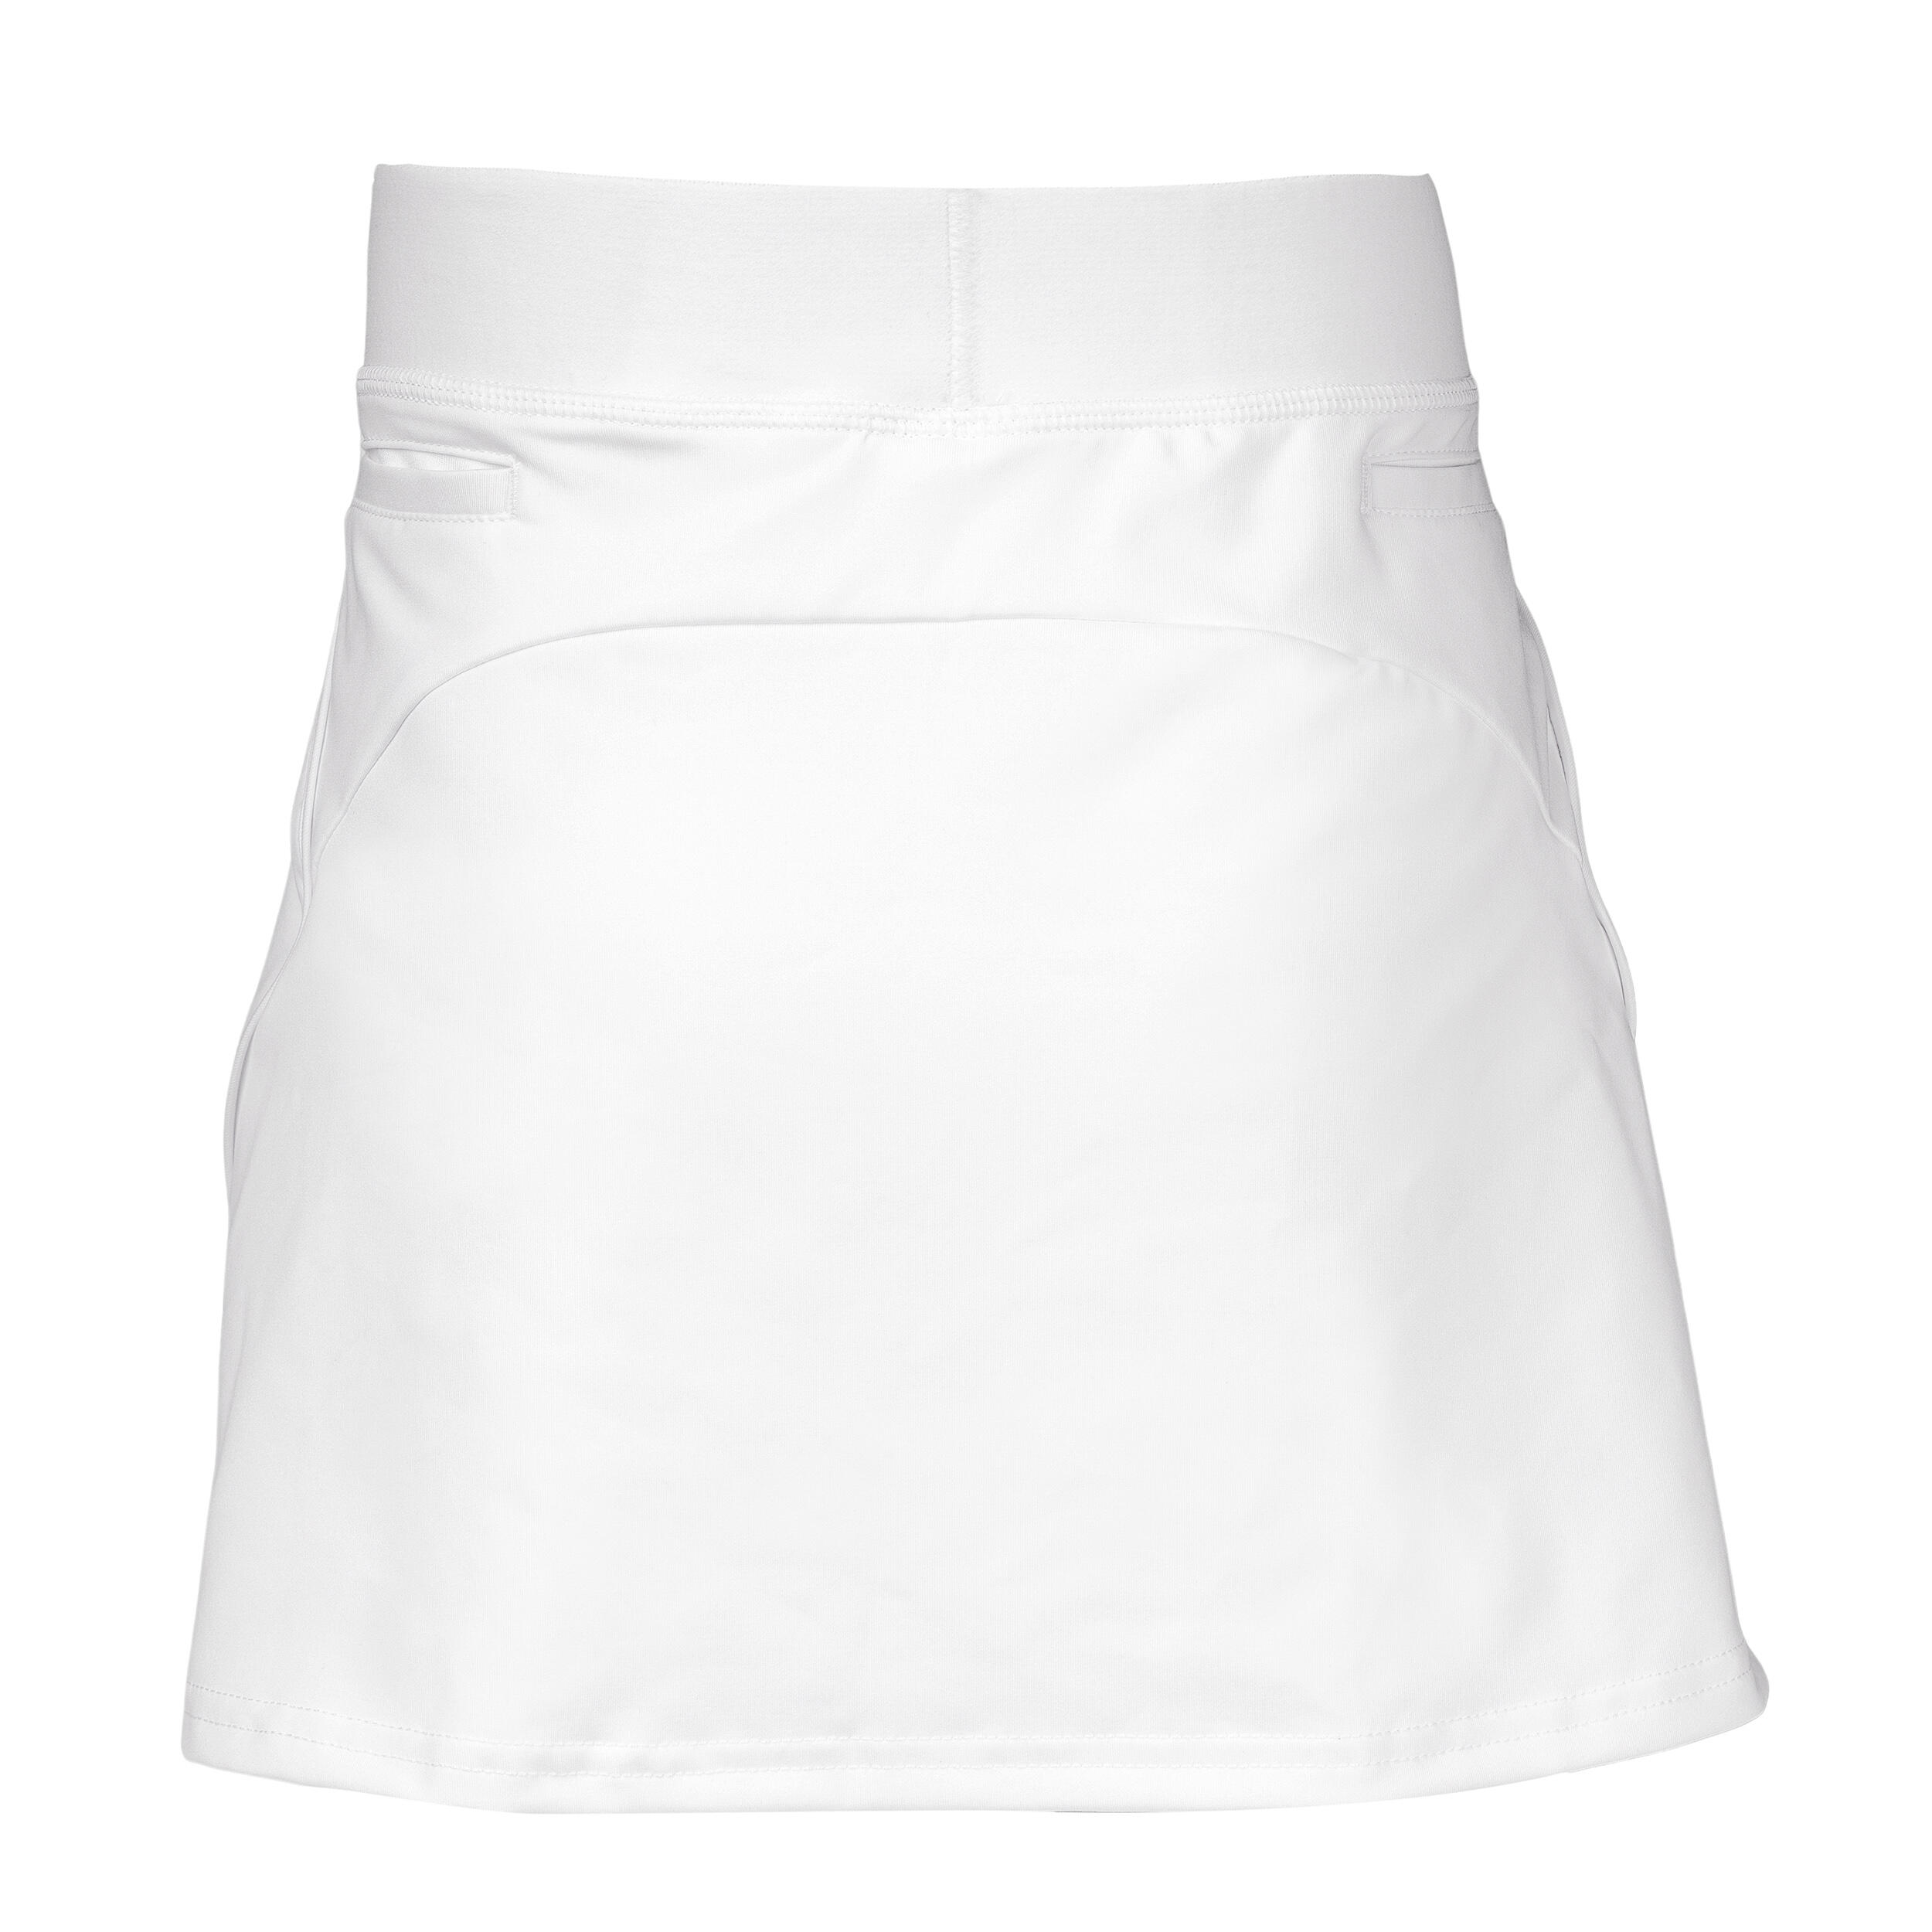 Girls' High-Intensity Field Hockey Skirt FH900 - White 2/4